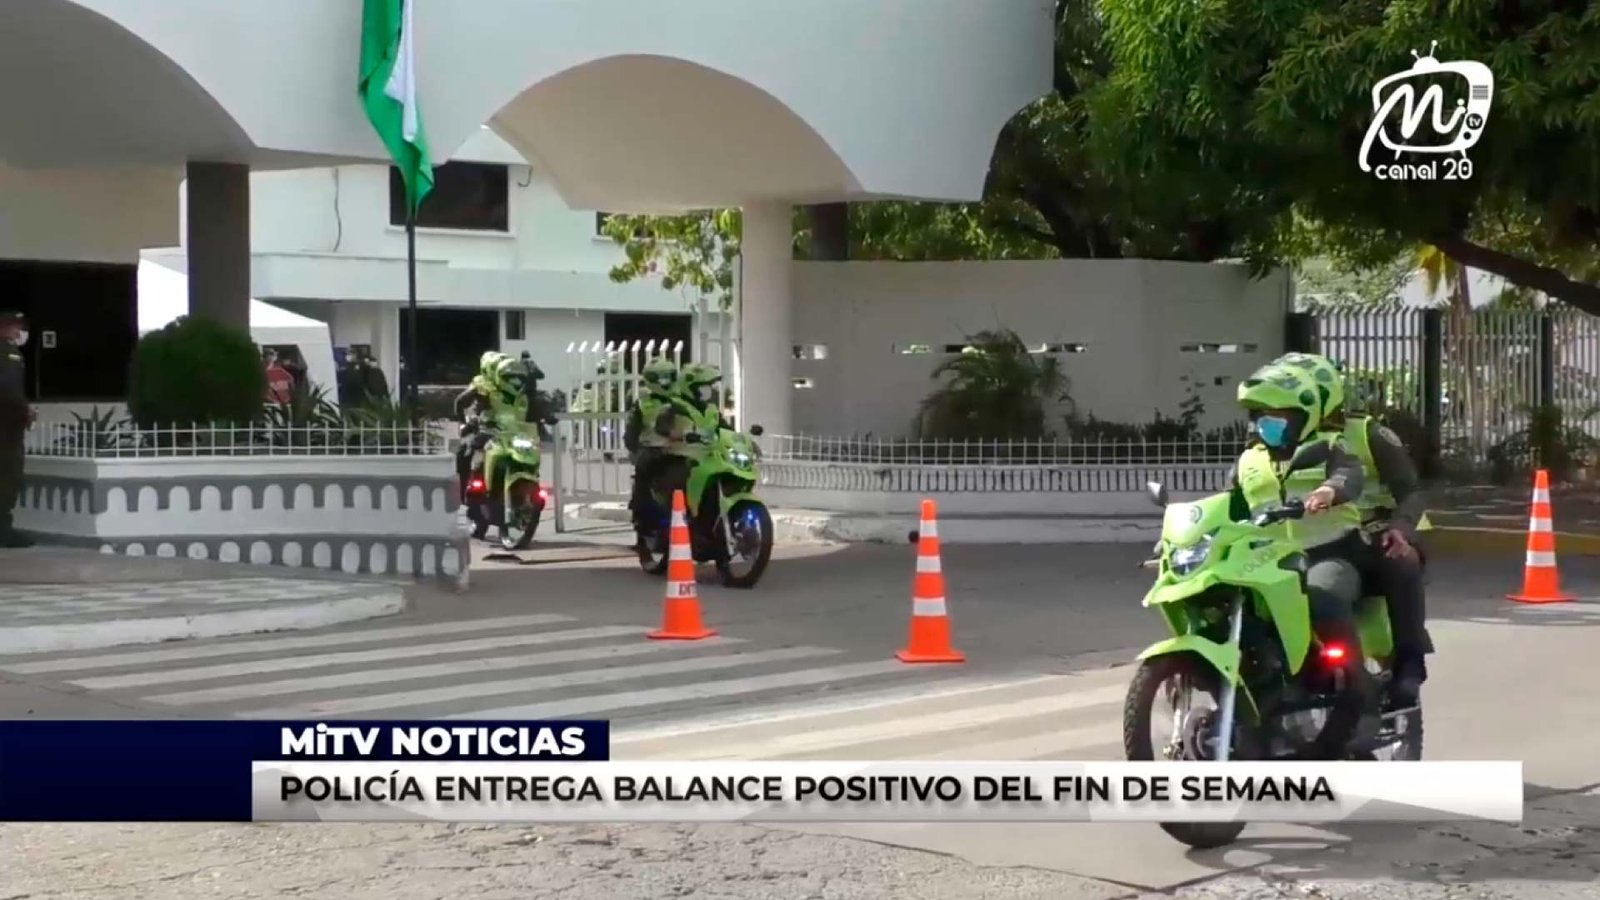 POLICÍA ENTREGA BALANCE POSITIVO DEL FIN DE SEMANA